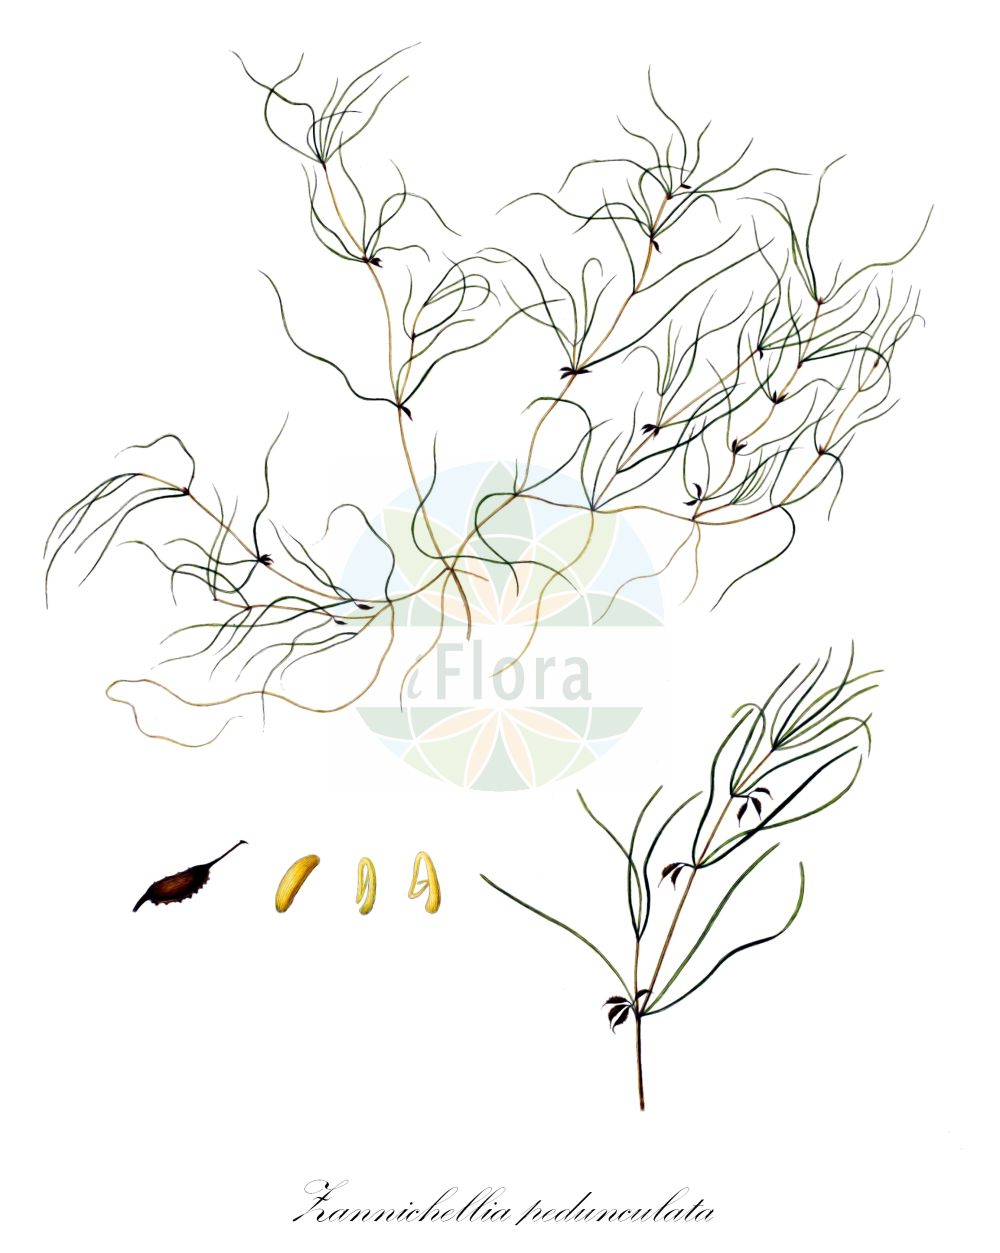 Historische Abbildung von Zannichellia pedunculata (Salz-Teichfaden). Das Bild zeigt Blatt, Bluete, Frucht und Same. ---- Historical Drawing of Zannichellia pedunculata (Salz-Teichfaden). The image is showing leaf, flower, fruit and seed.(Zannichellia pedunculata,Salz-Teichfaden,Zannichellia pedicellata,Zannichellia pedunculata,Salz-Teichfaden,Zannichellia,Teichfaden,Horned Pondweed,Potamogetonaceae,Laichkrautgewächse,Pondweed family,Blatt,Bluete,Frucht,Same,leaf,flower,fruit,seed,Oeder (1761-1883))